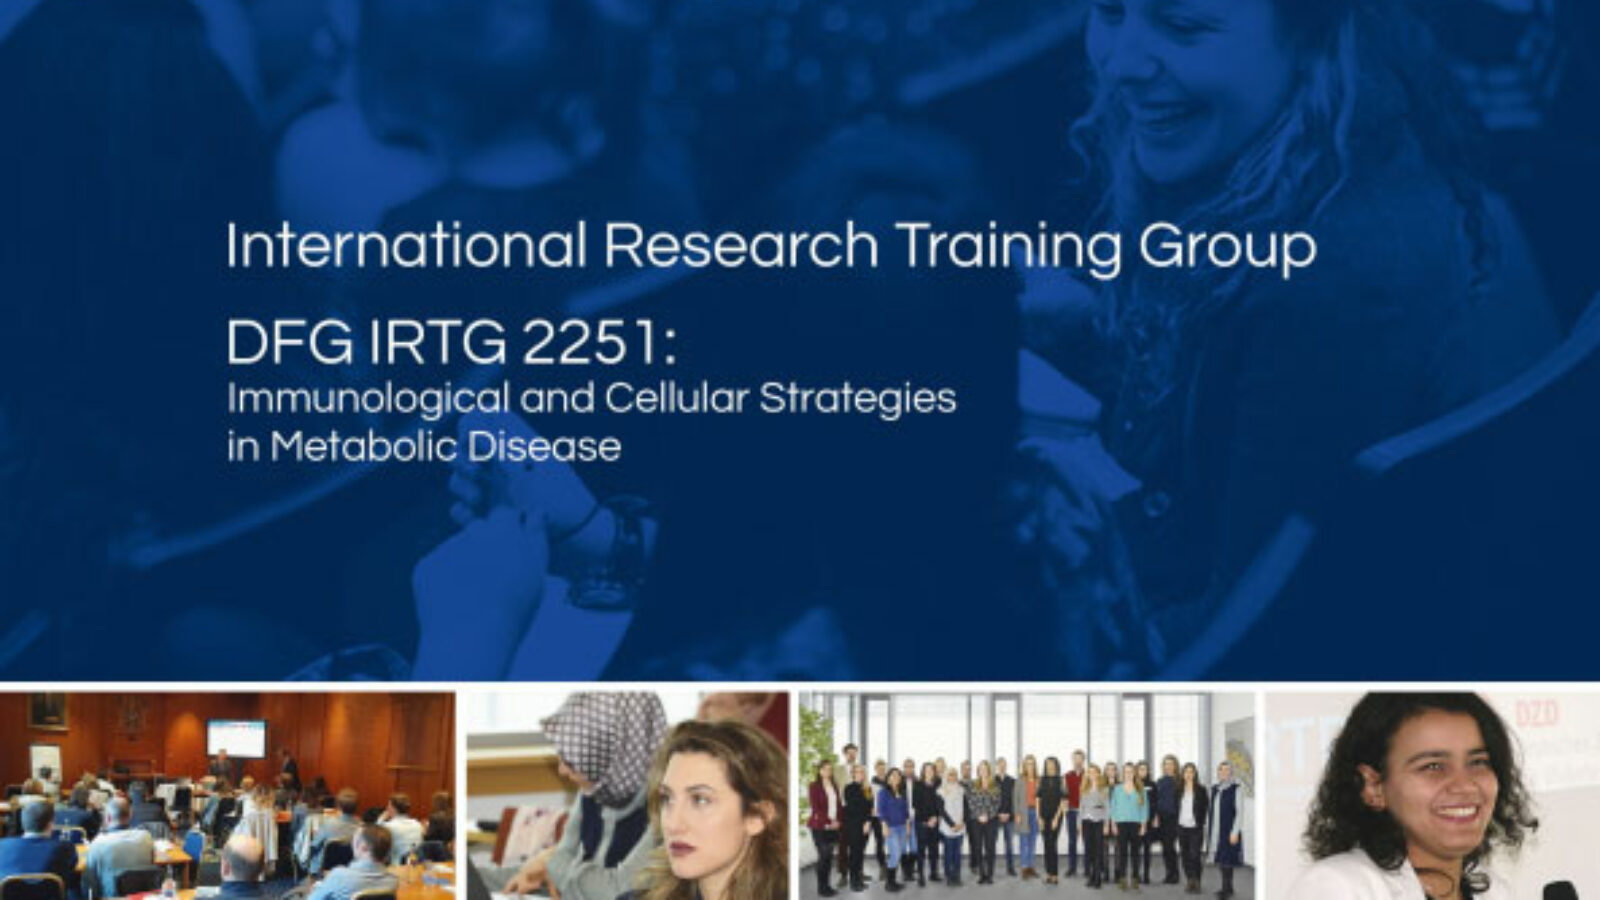 IRTG - First Annual Update Brochure Released